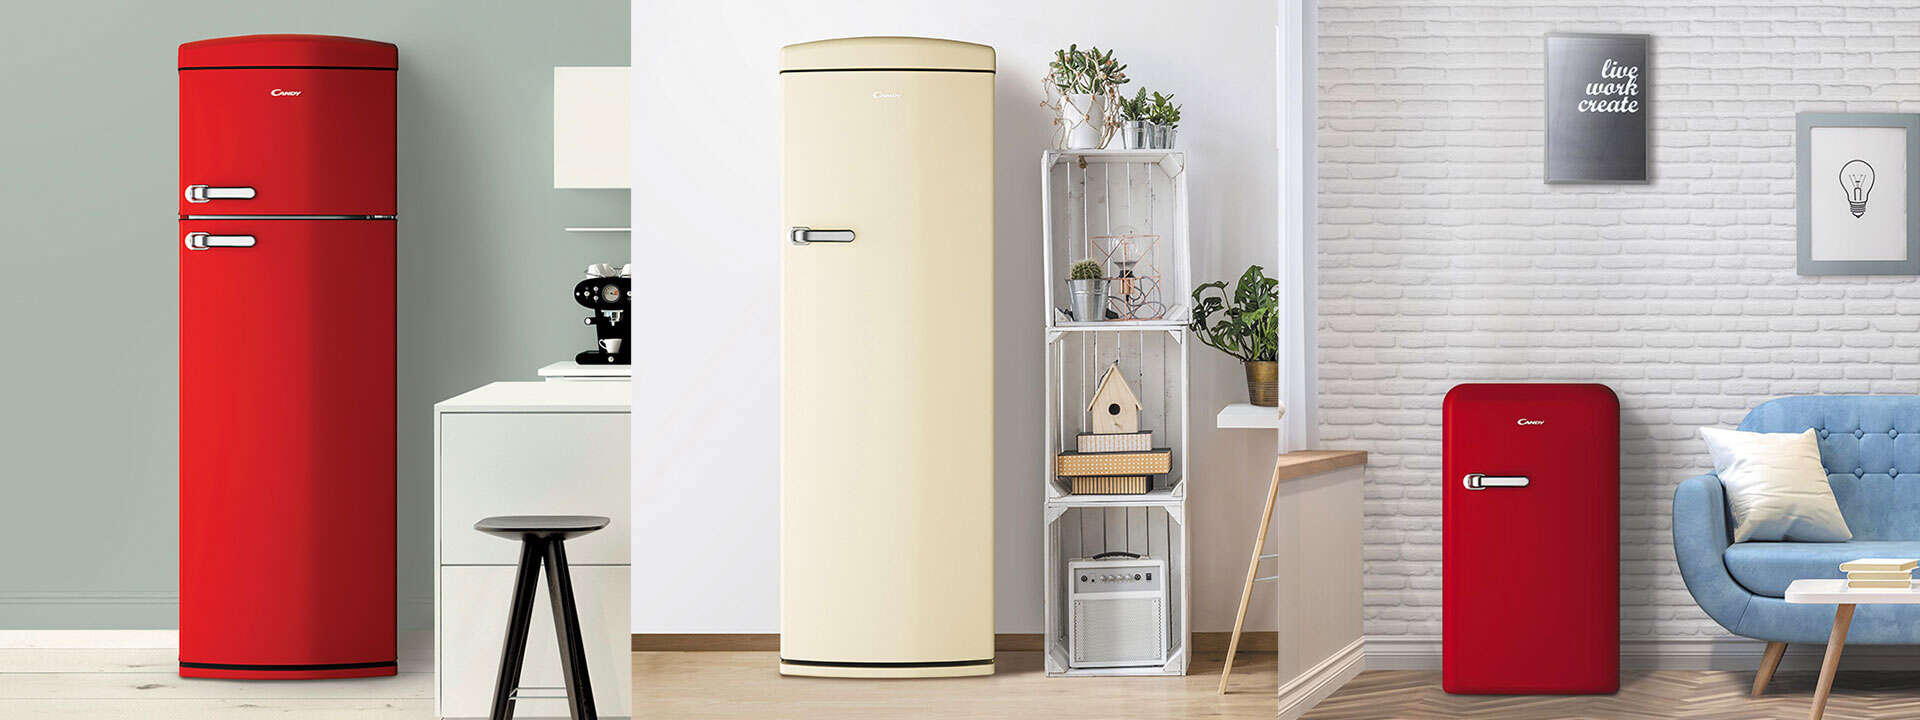 Divo: frigorifero colorato, di design